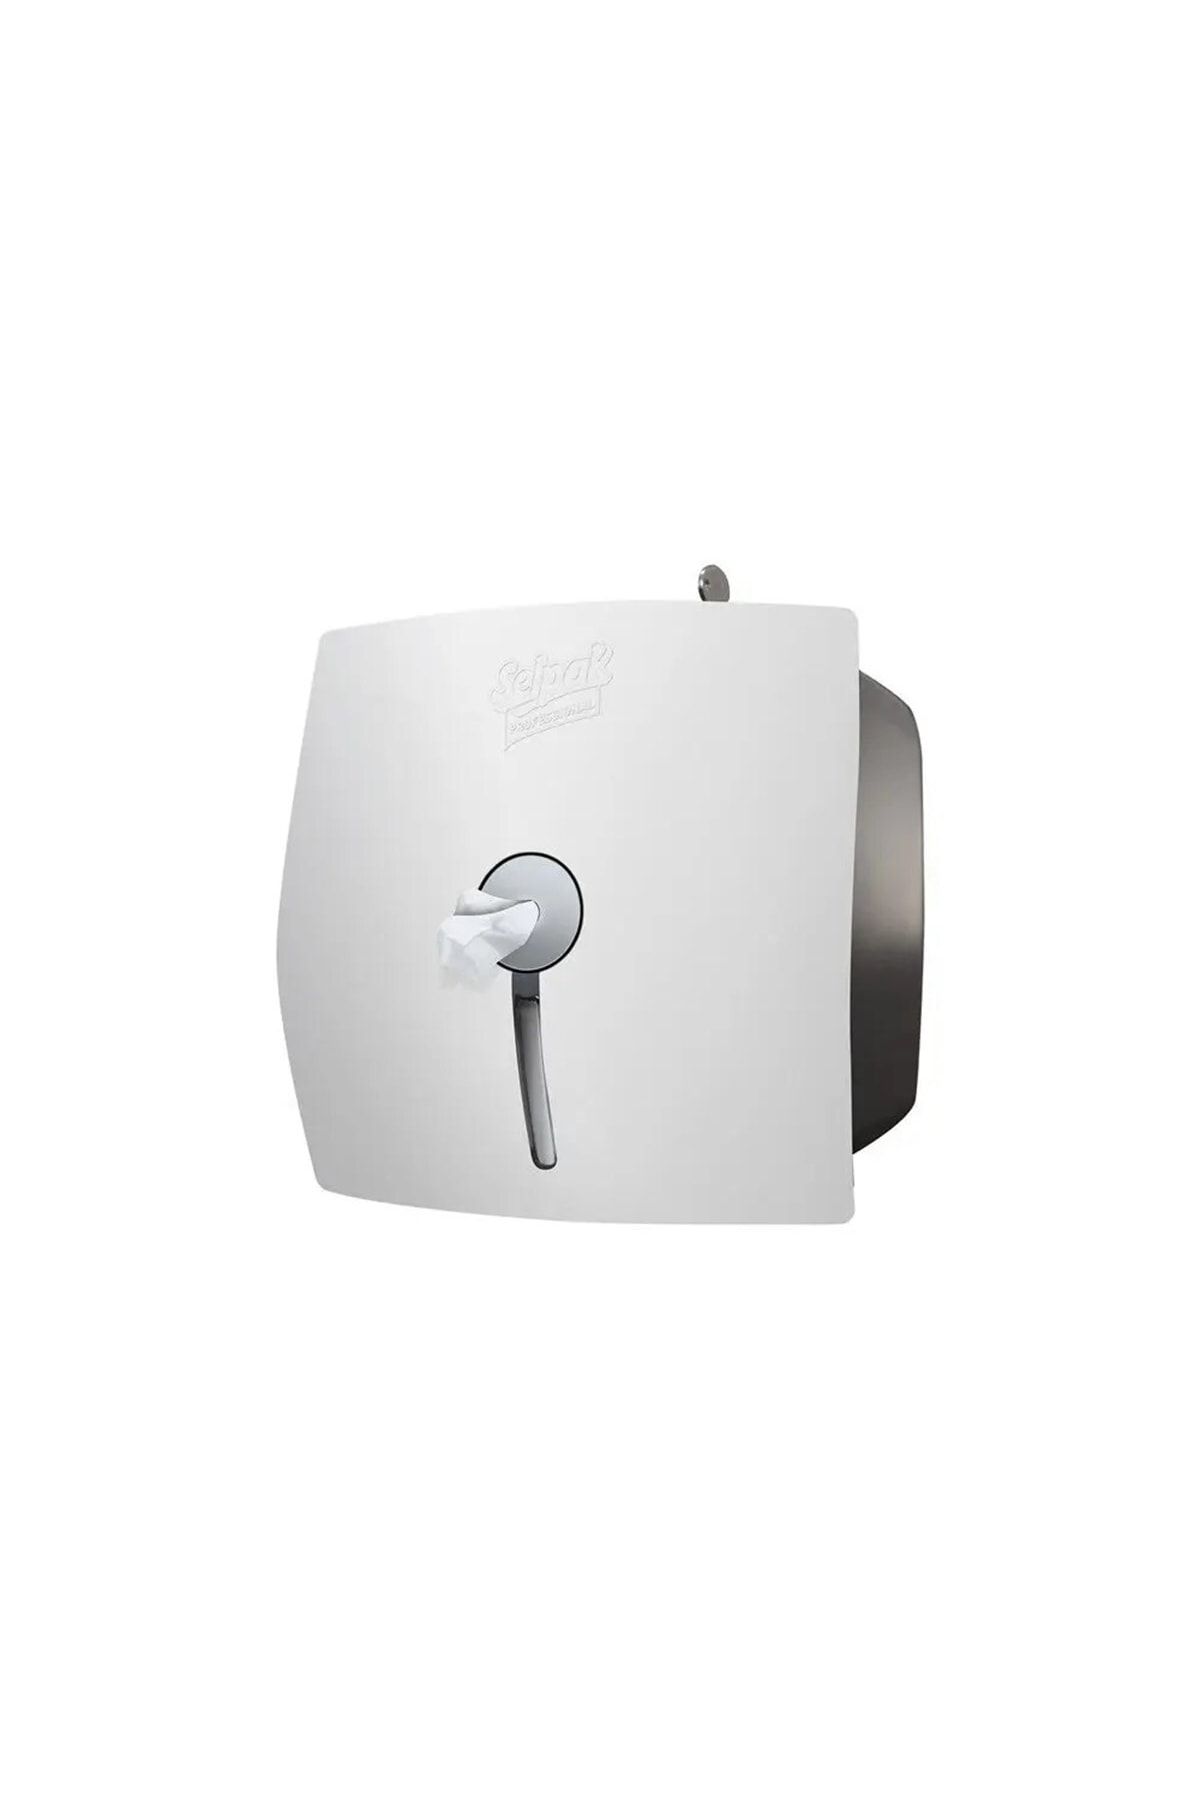 Selpak Professional Içten Çekmeli Tuvalet Kağıdı Dispenseri Beyaz